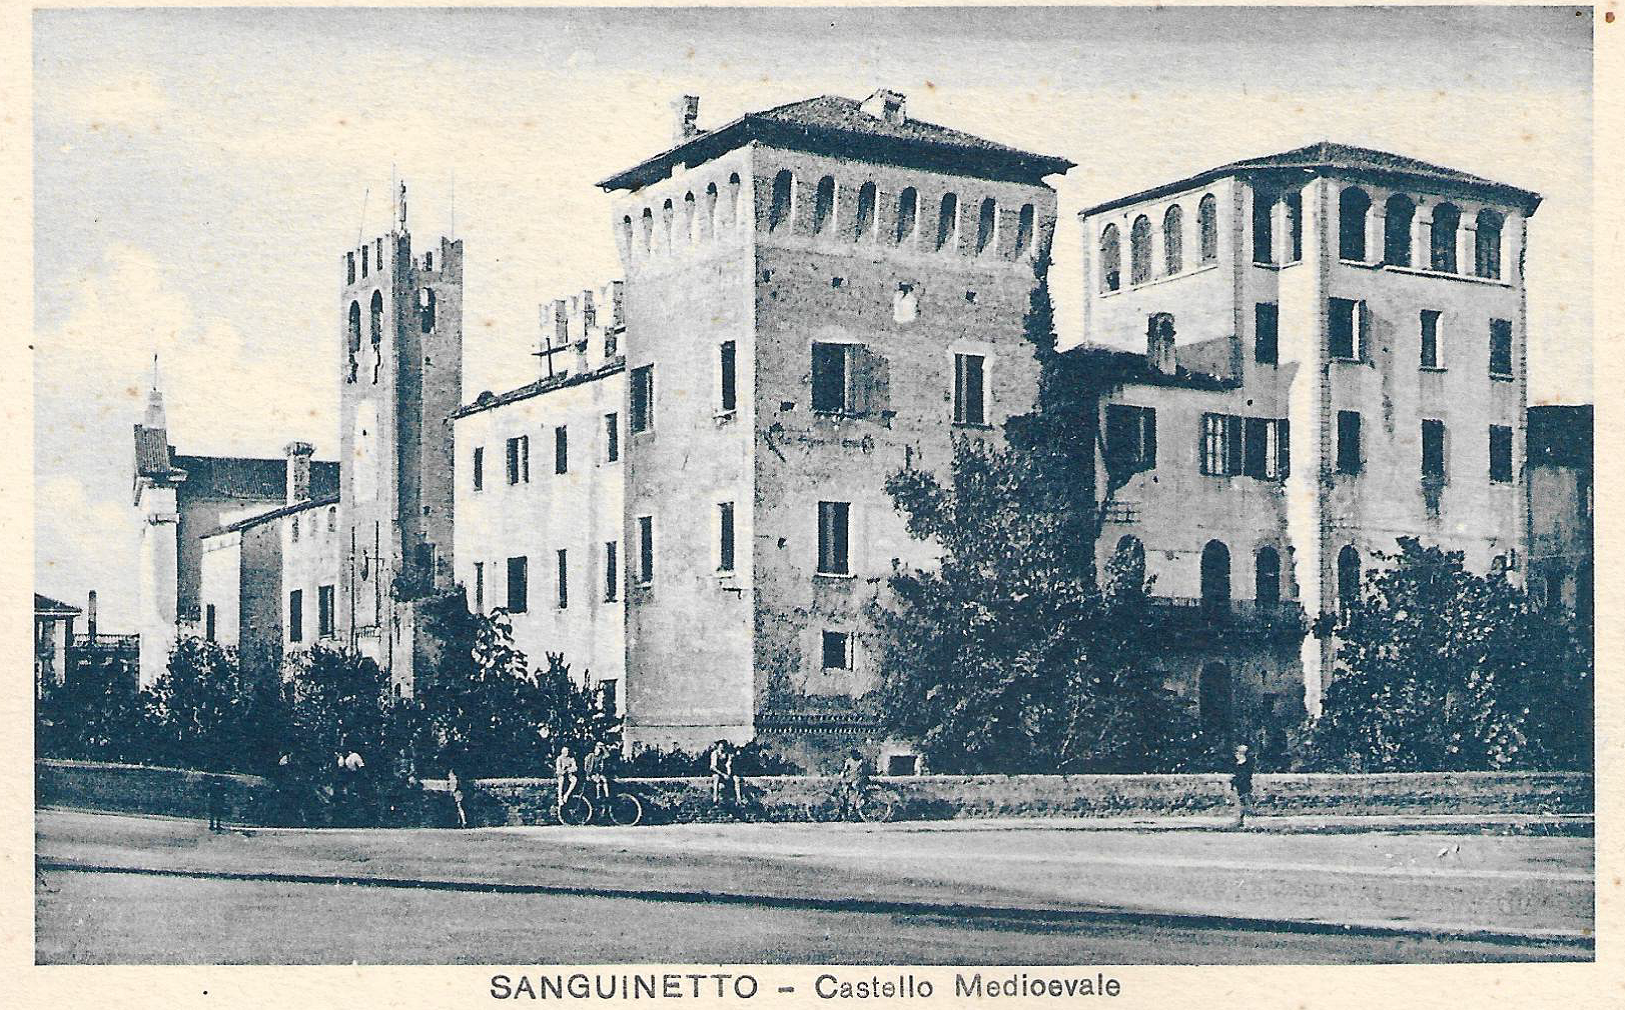 Sanguinetto castle